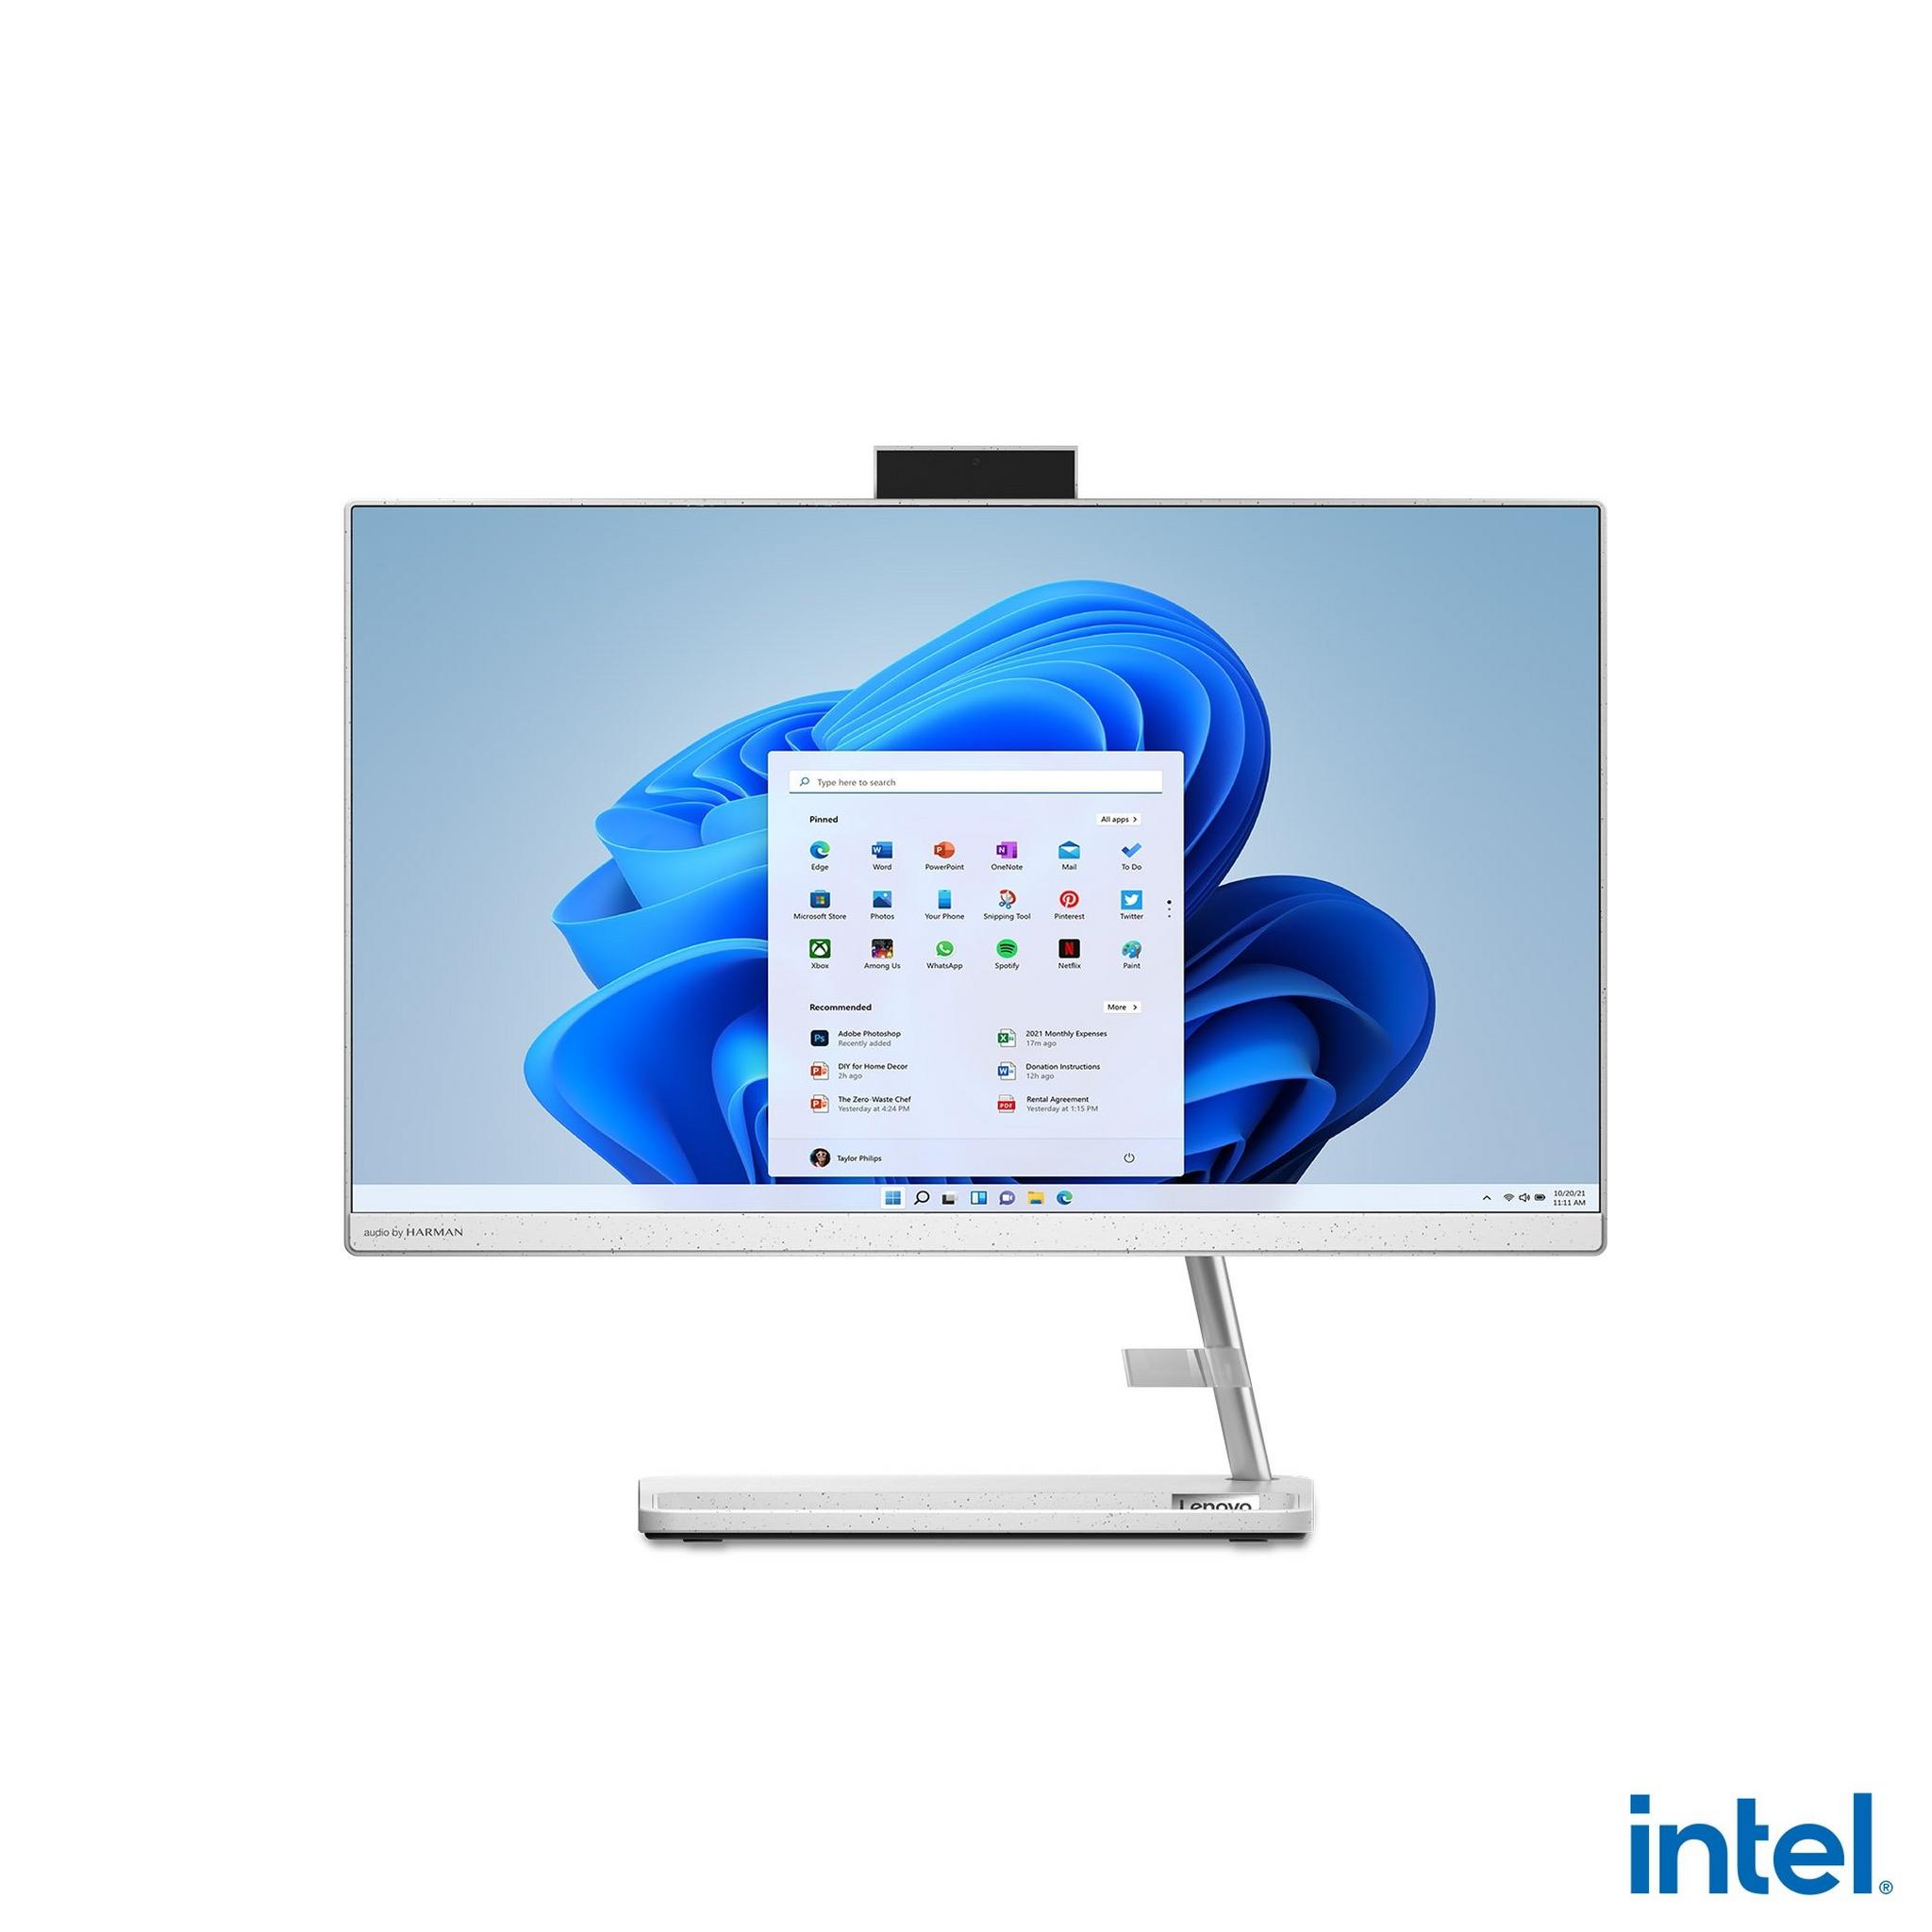 Lenovo IdeaCentre 3 Intel Core i7 12th Gen, 16GB RAM, 512GB SSD, 27-inch All-in-One Desktop - White